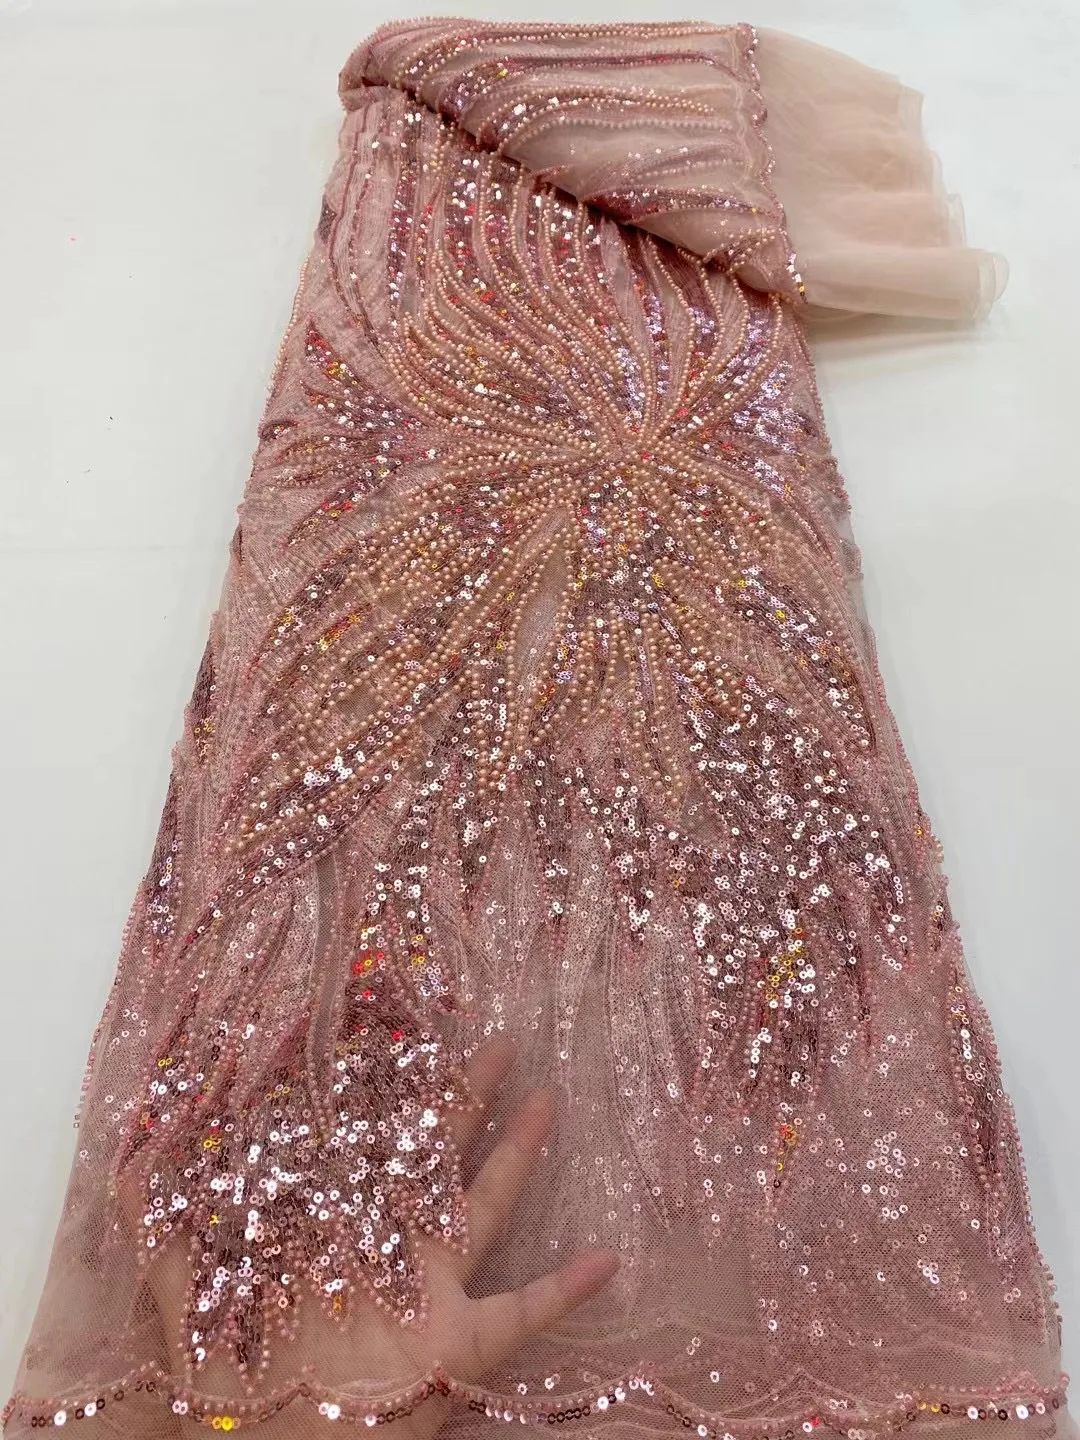 

Африканское Новое поступление, роскошная розовая ткань с блестками, французское высококачественное Тюлевое кружево ручной работы из бисера, нигерийское женское платье для выпусквечерние вечера